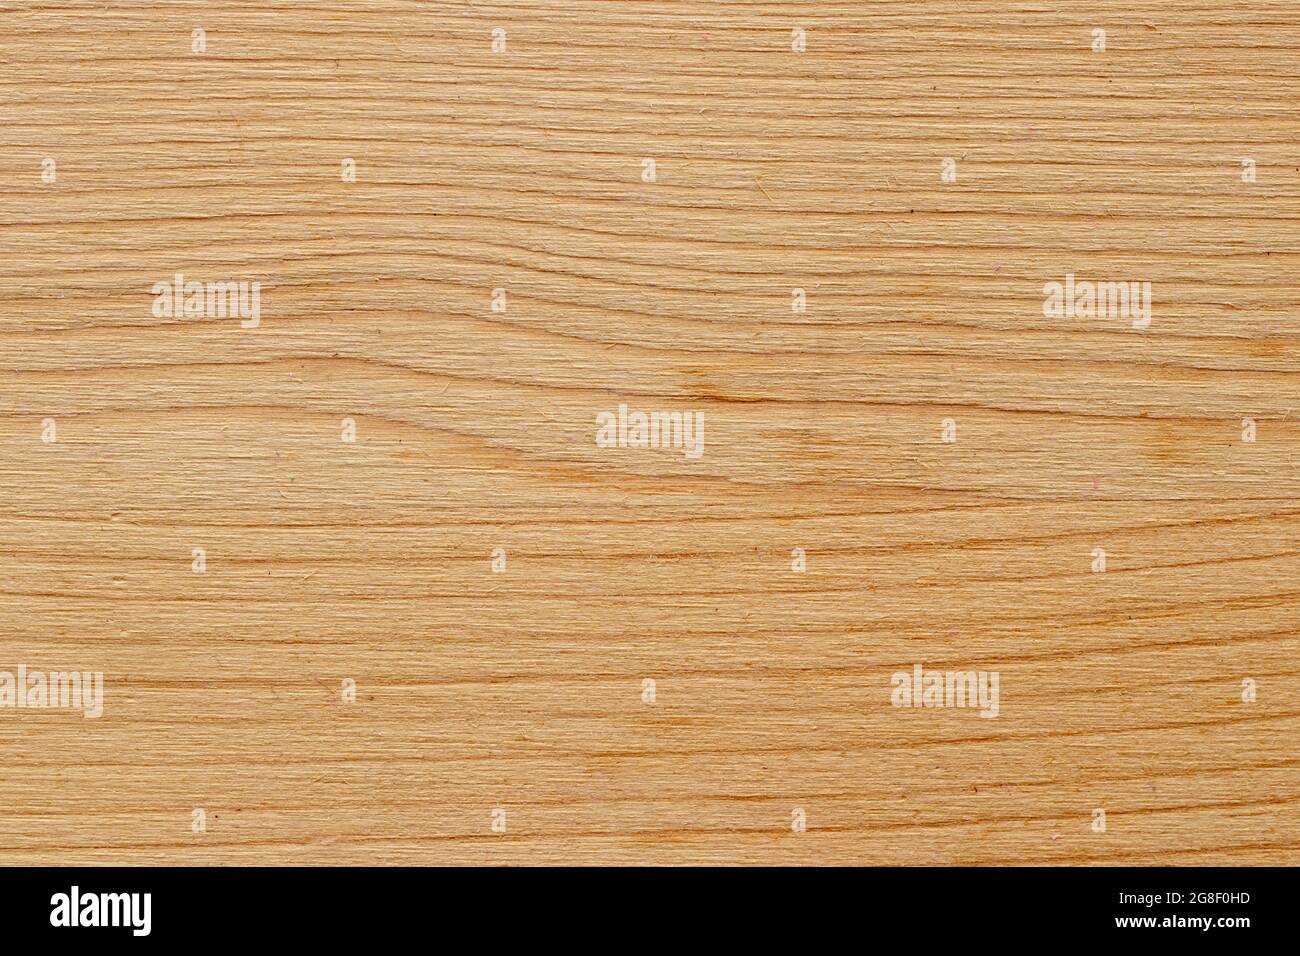 Nahaufnahme des Hintergrunds mit Holzstruktur. Detail von grob geschnittenem hellem Holzbrett mit natürlichem Muster. Makroaufnahme. Stockfoto